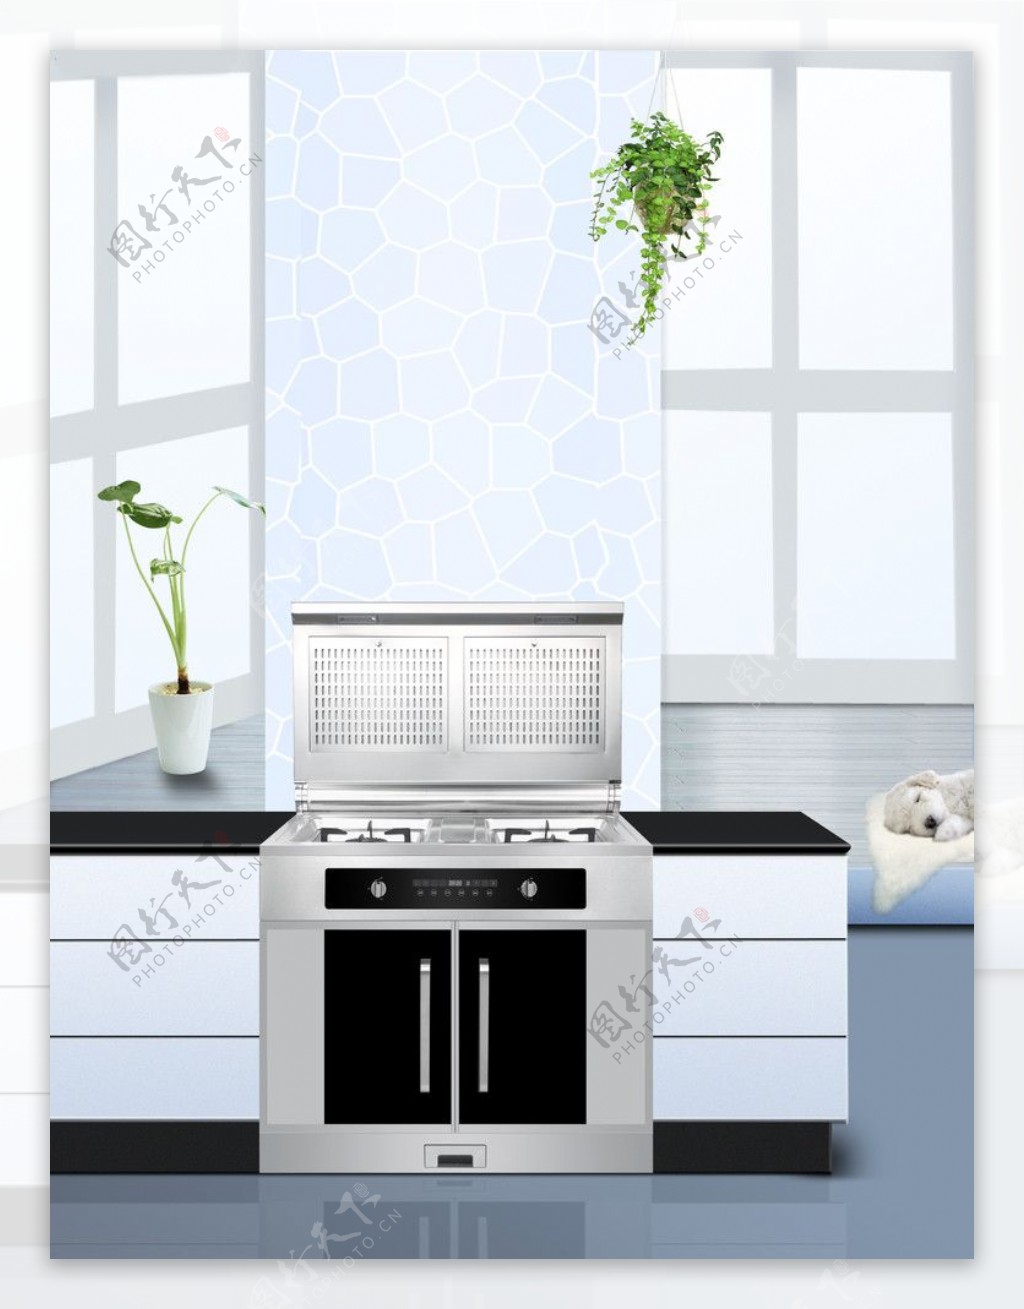 厨房广告设计图片